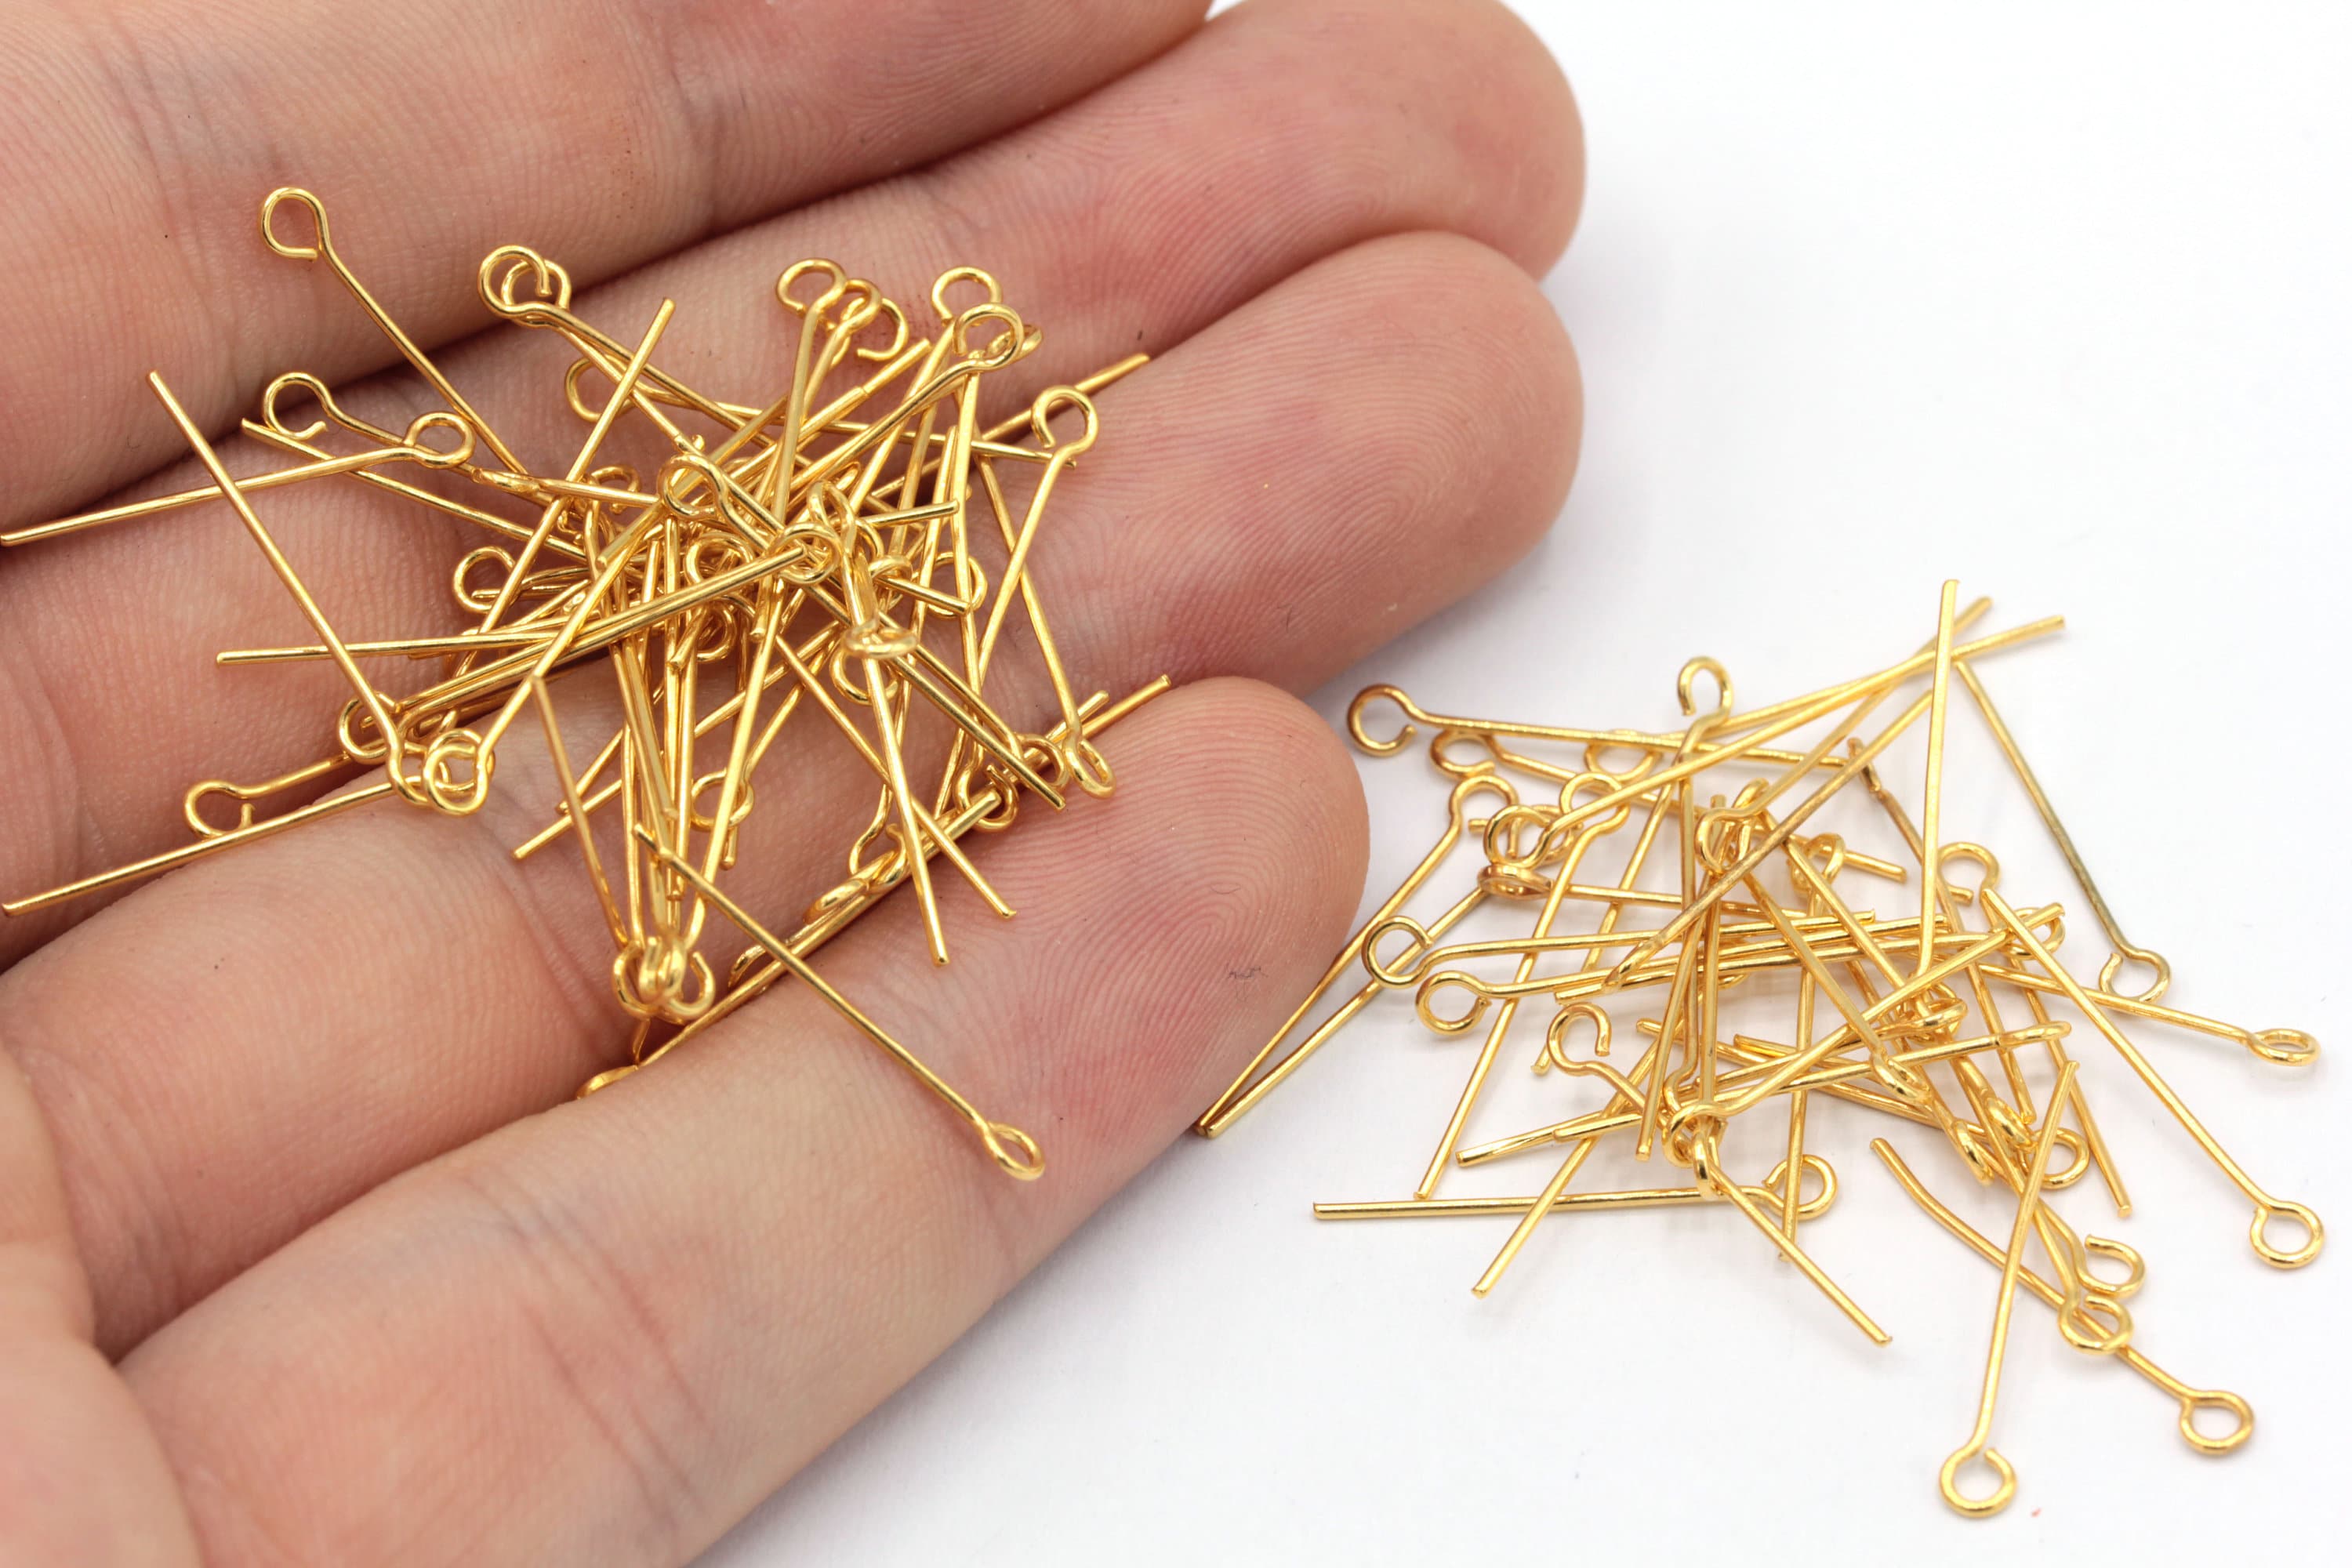 Gold Plated Eye Pin, Eye Pins, 50mm Size Eye Pins, Jewelry Beading Pin,  Silver Eye Pin, Jewelry Making Pins 